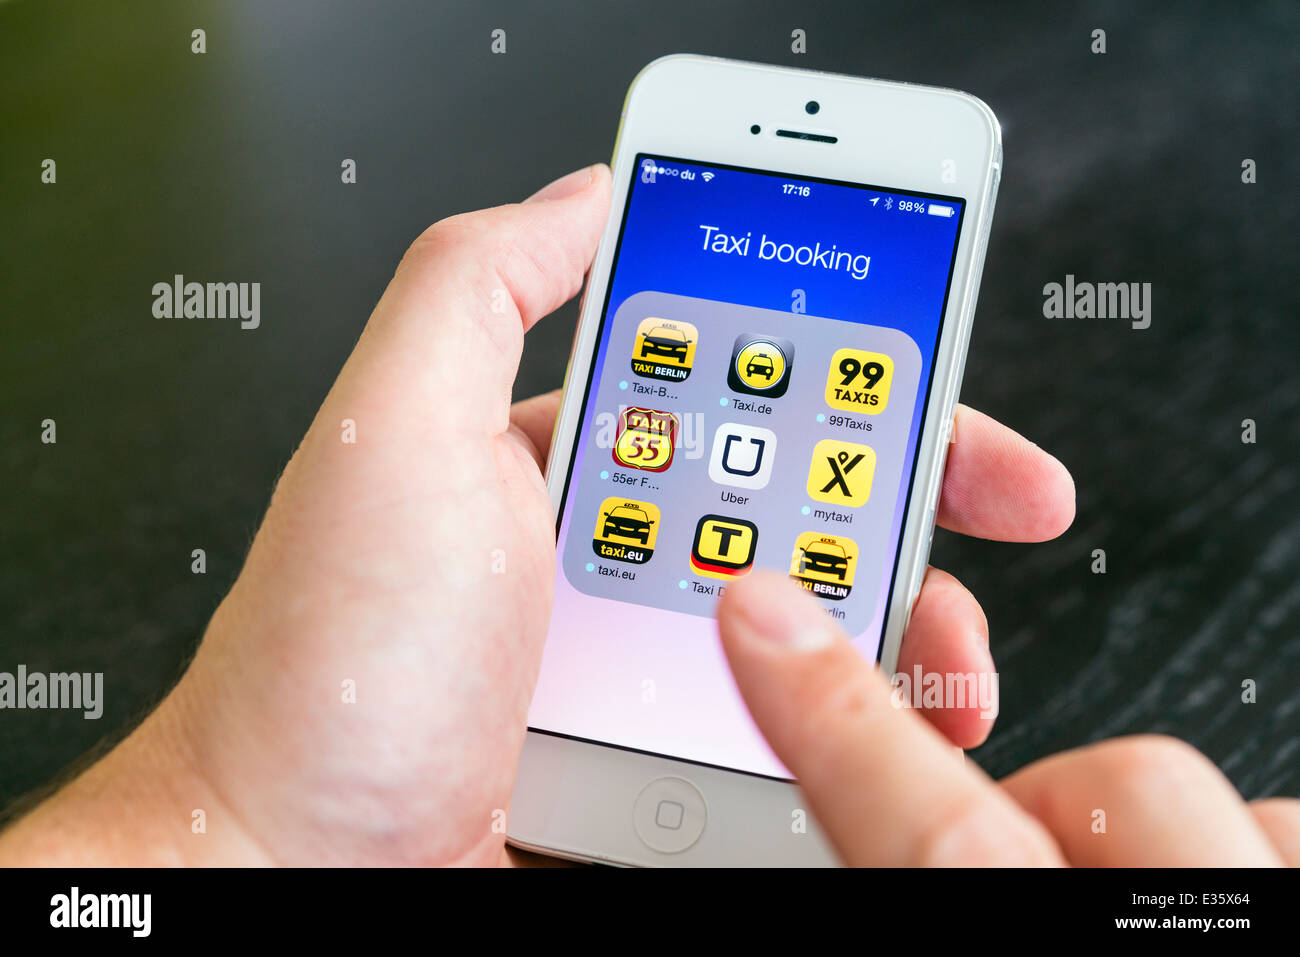 Détail de l'écran de l'iPhone avec de nombreuses applications mobiles pour la réservation de taxis Banque D'Images